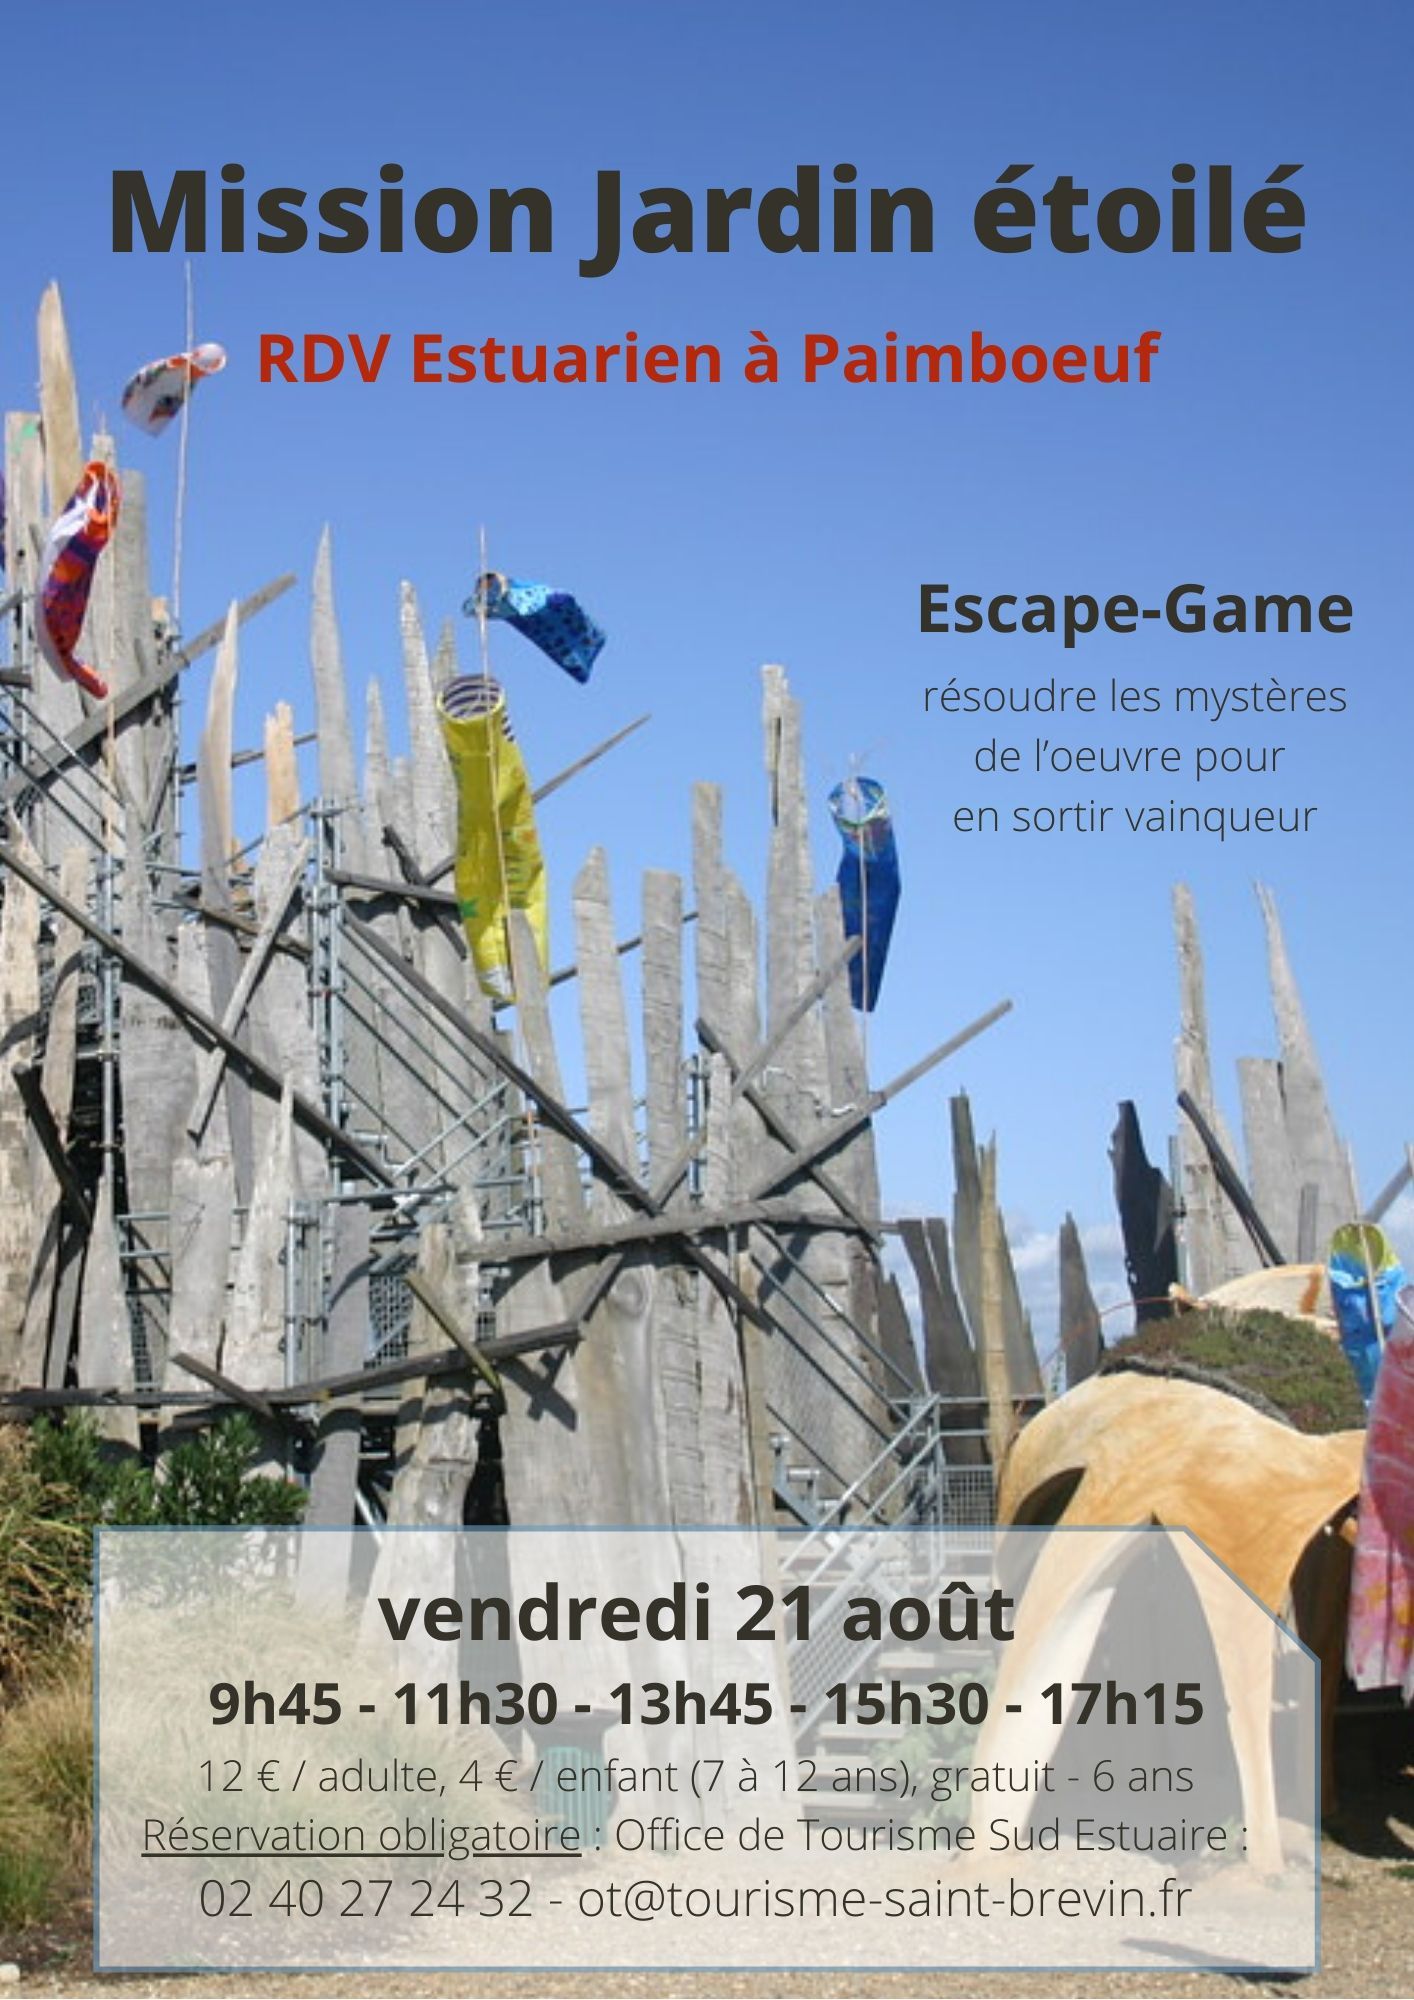 RDV Estuarien aout 2020 - Mission Jardin étoilé - Paimboeuf